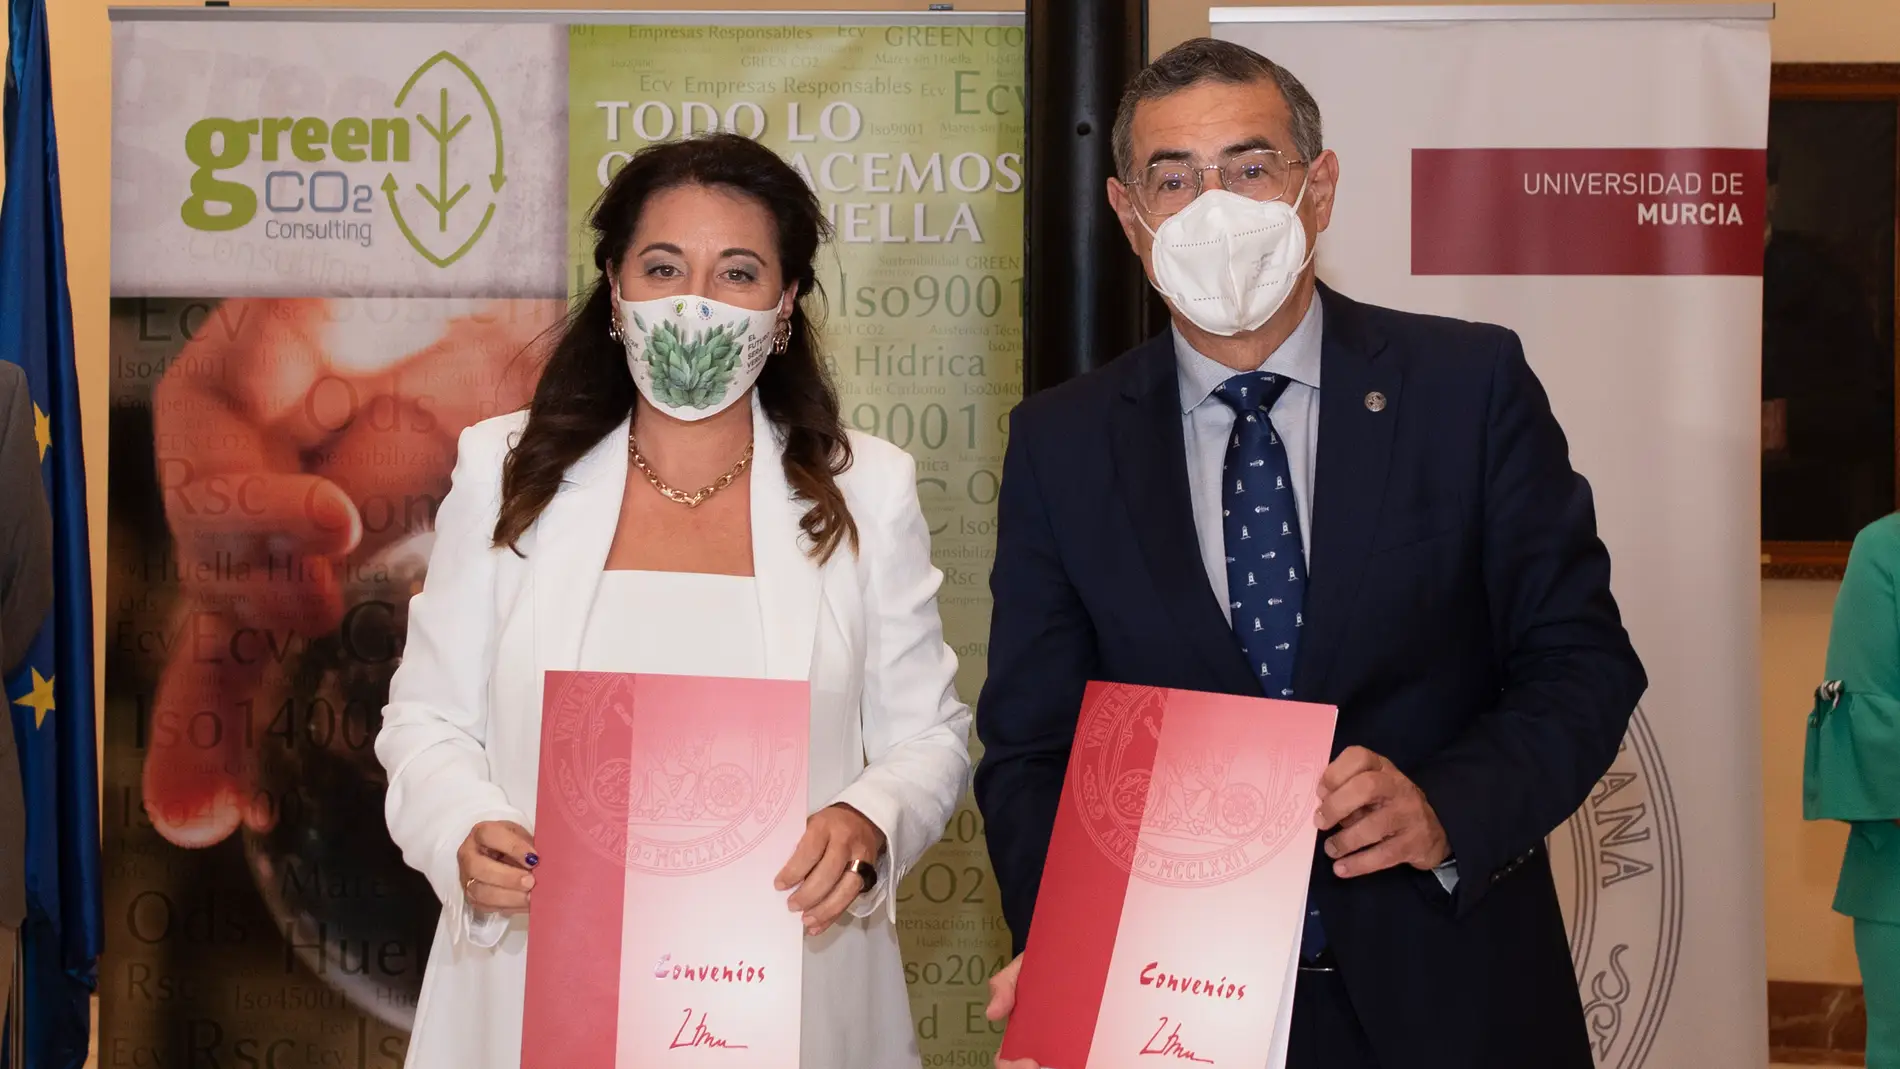 La Universidad de Murcia y Green Co2 ponen en marcha primera Cátedra de Carbono Azul en España